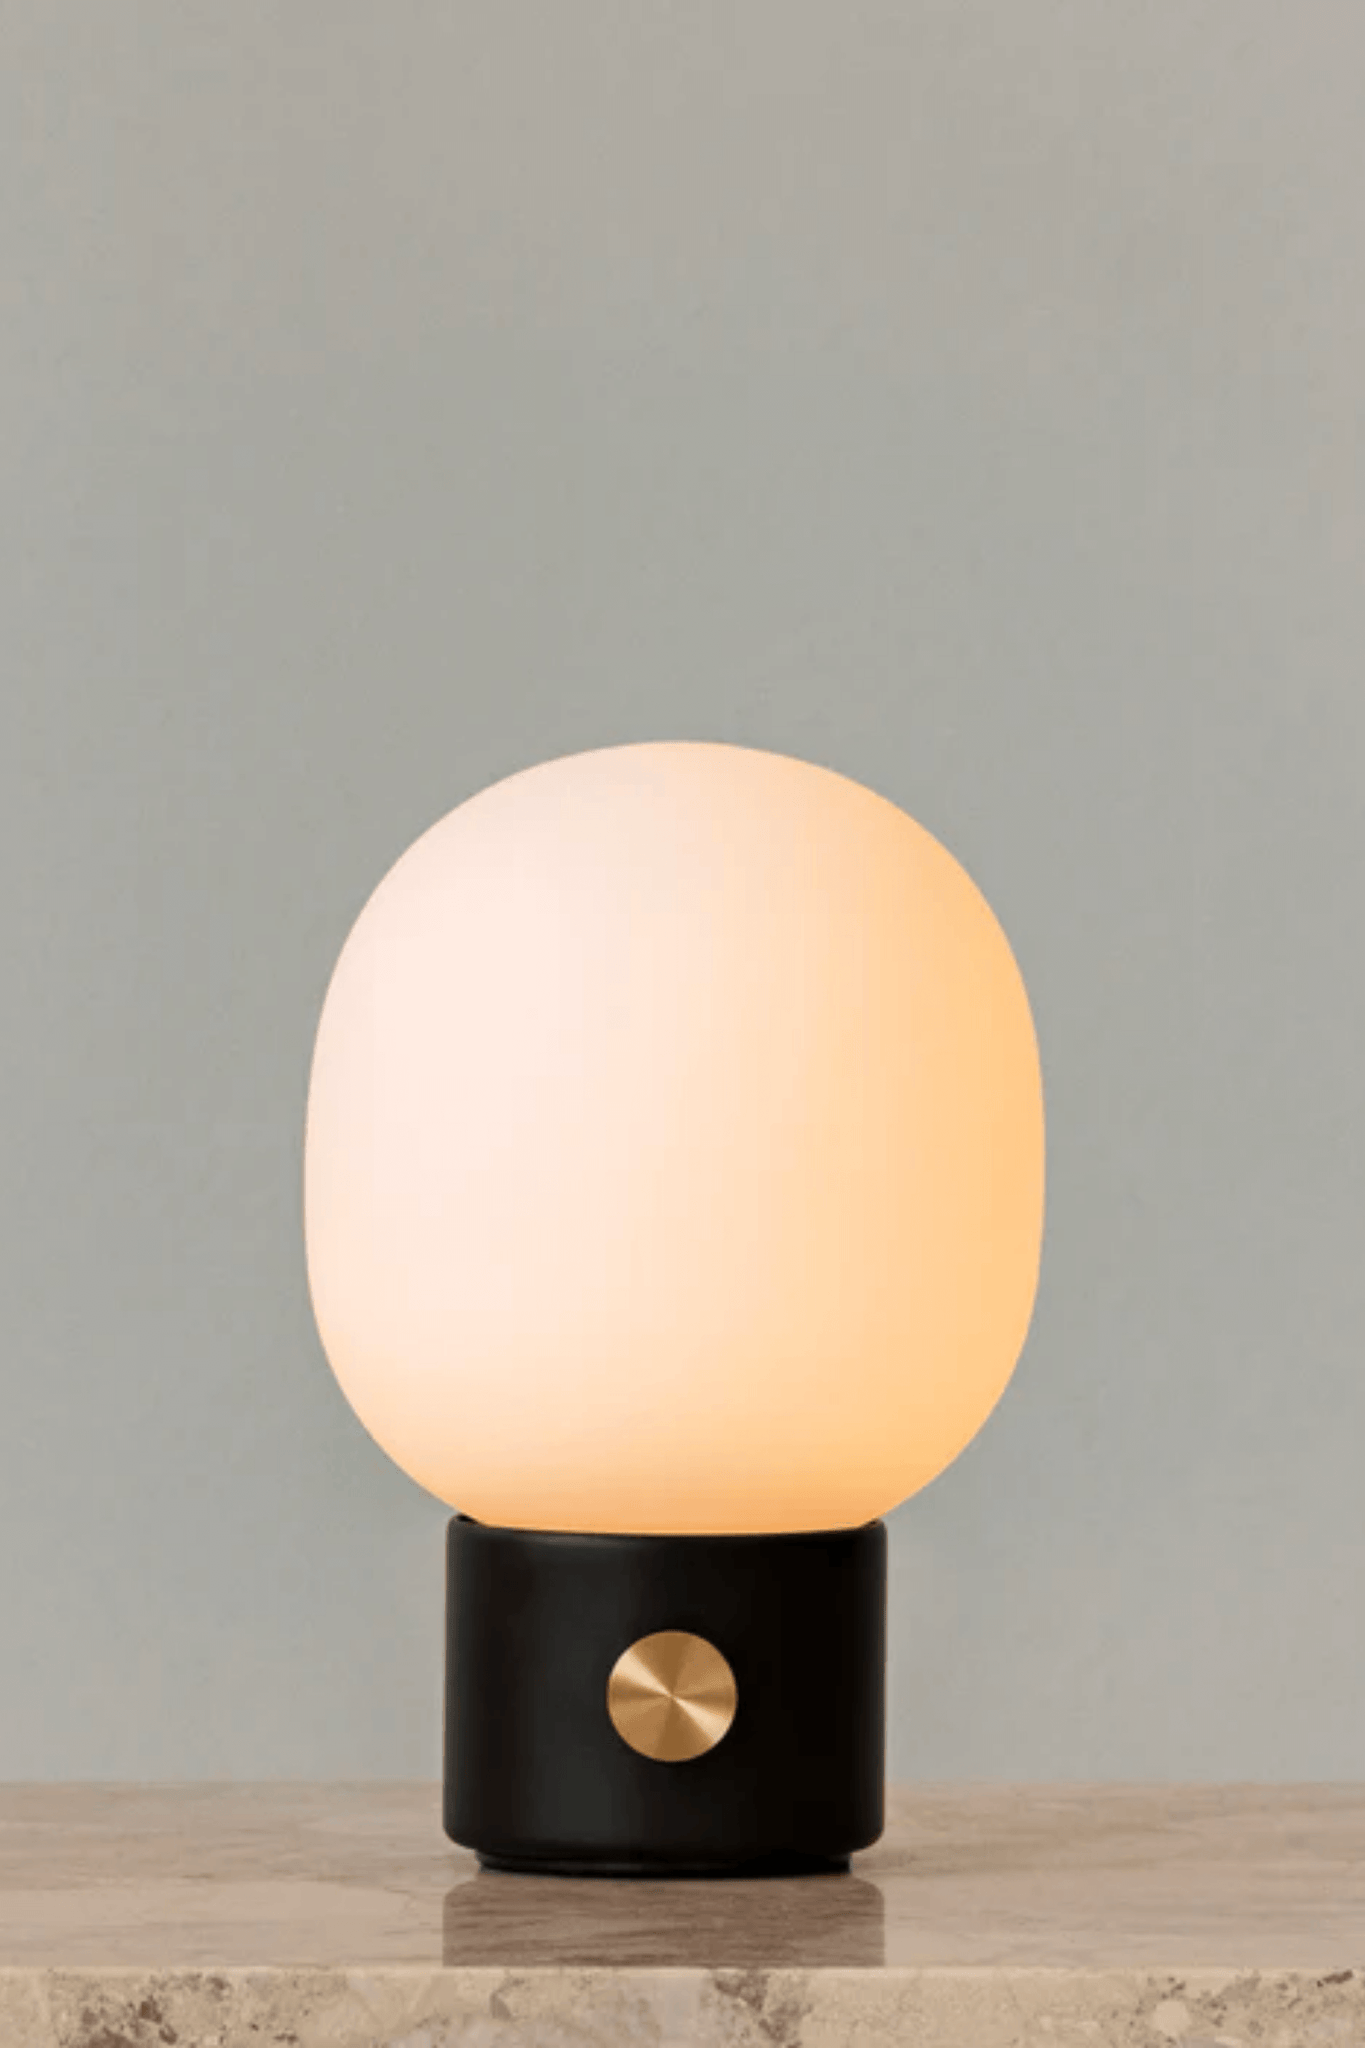 Black Portable JWDA Table Lamp by Menu, shown lit